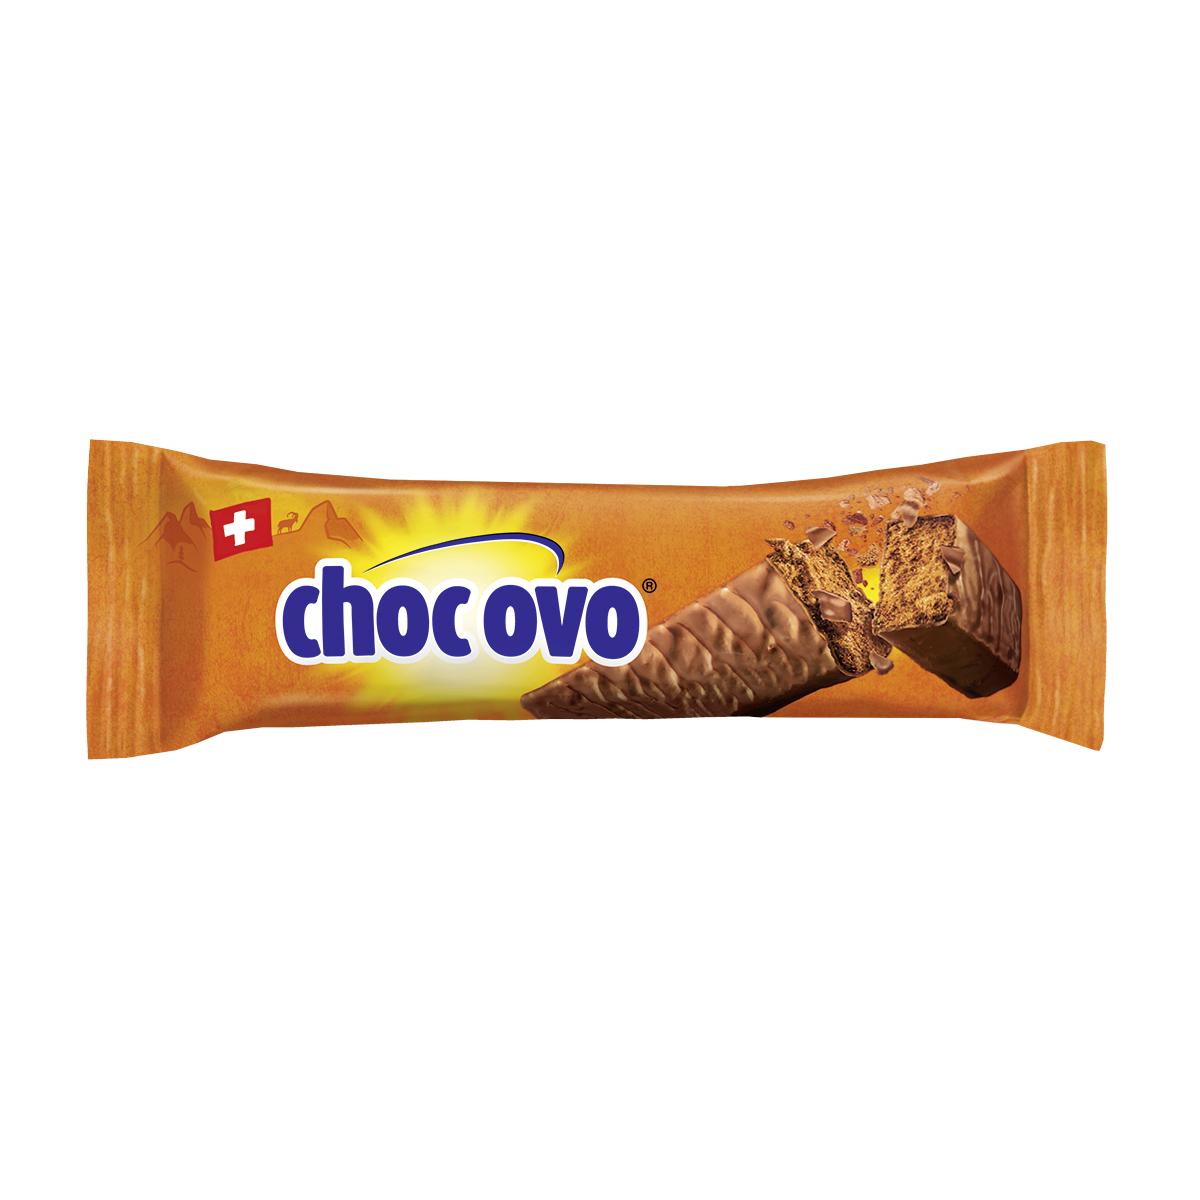  Choc Ovo - Schokoriegel von Ovomaltine